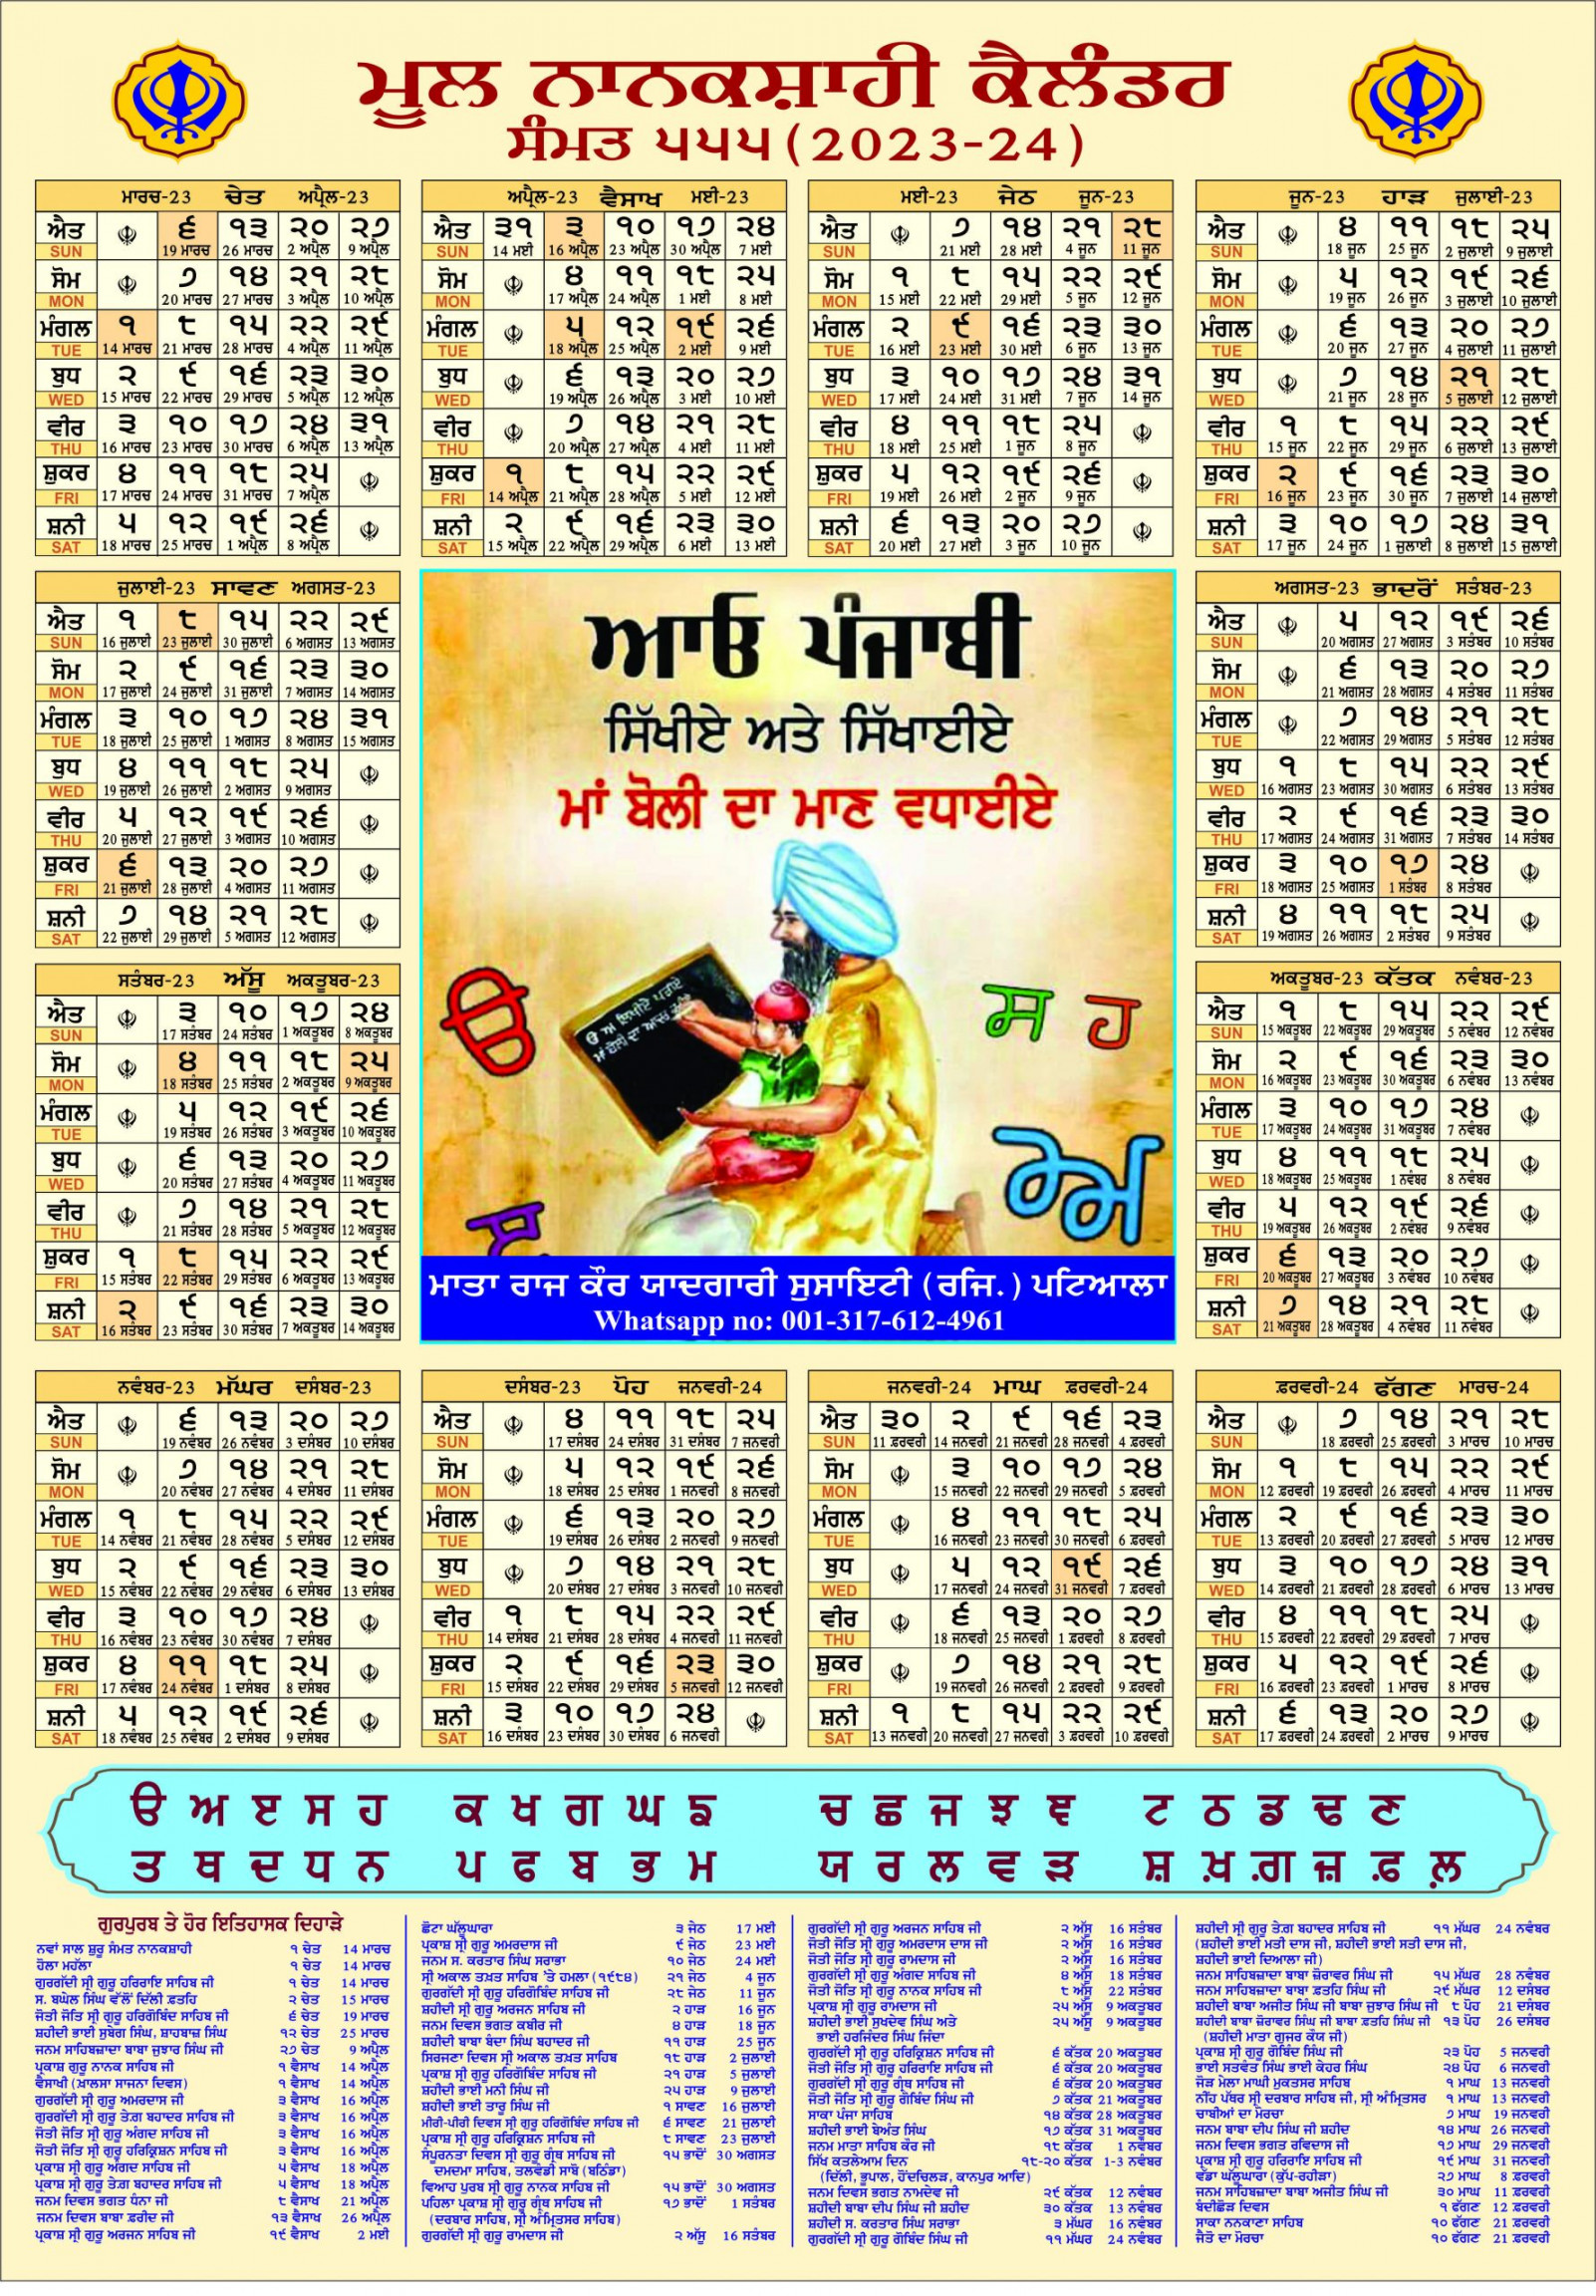 mool nanakshahi calendar the original sikh calendar based on